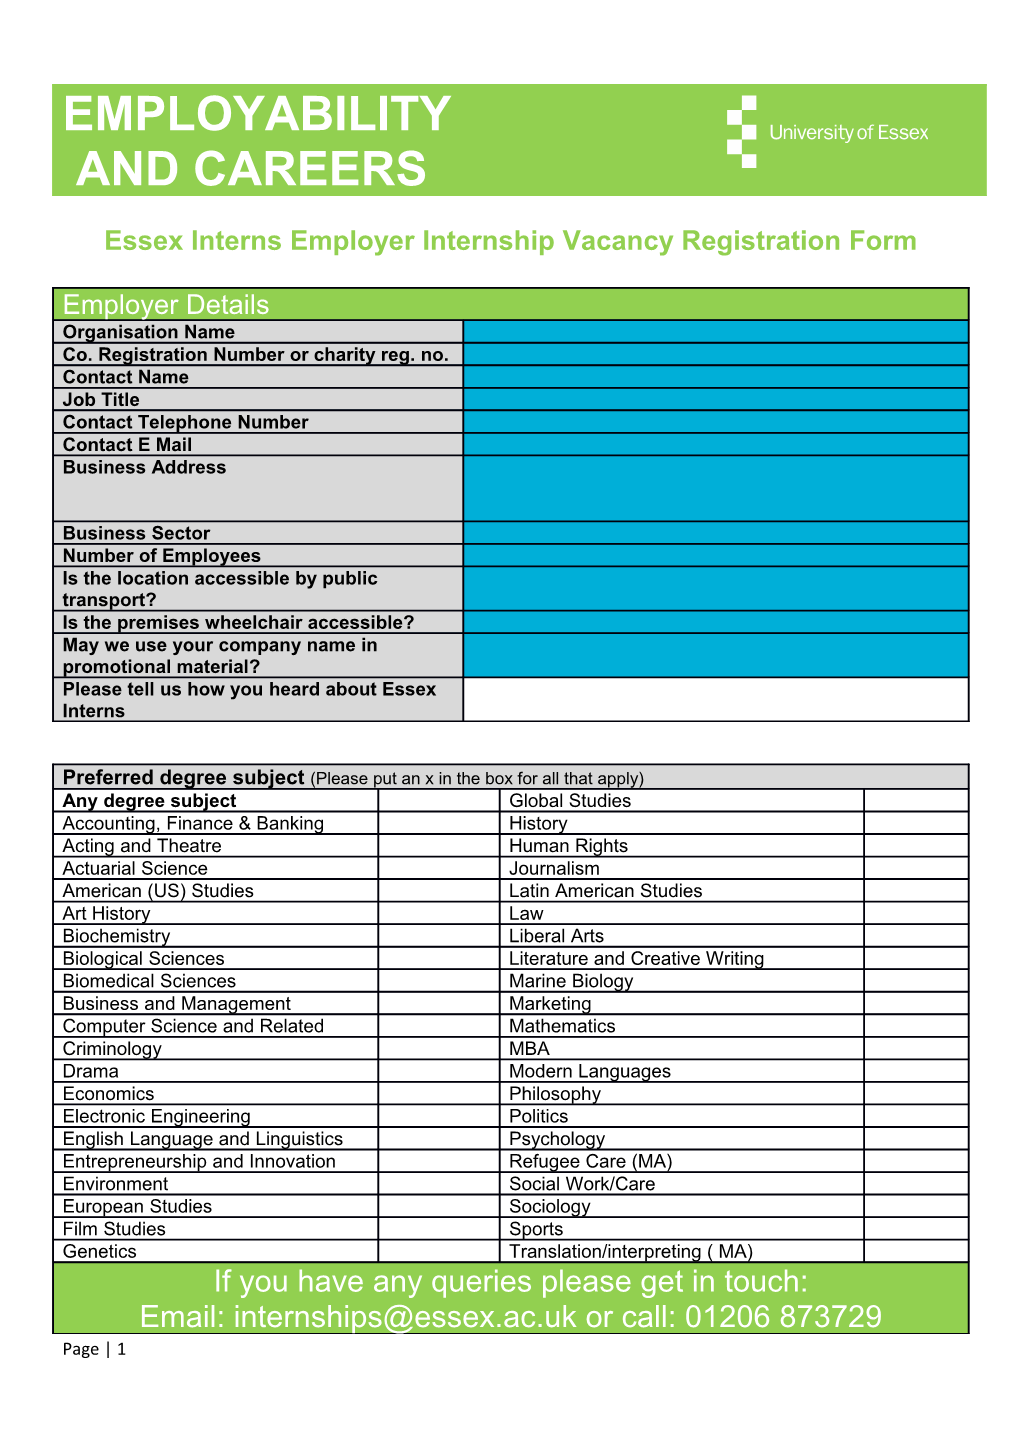 Essex Interns Employer Internship Vacancy Registration Form